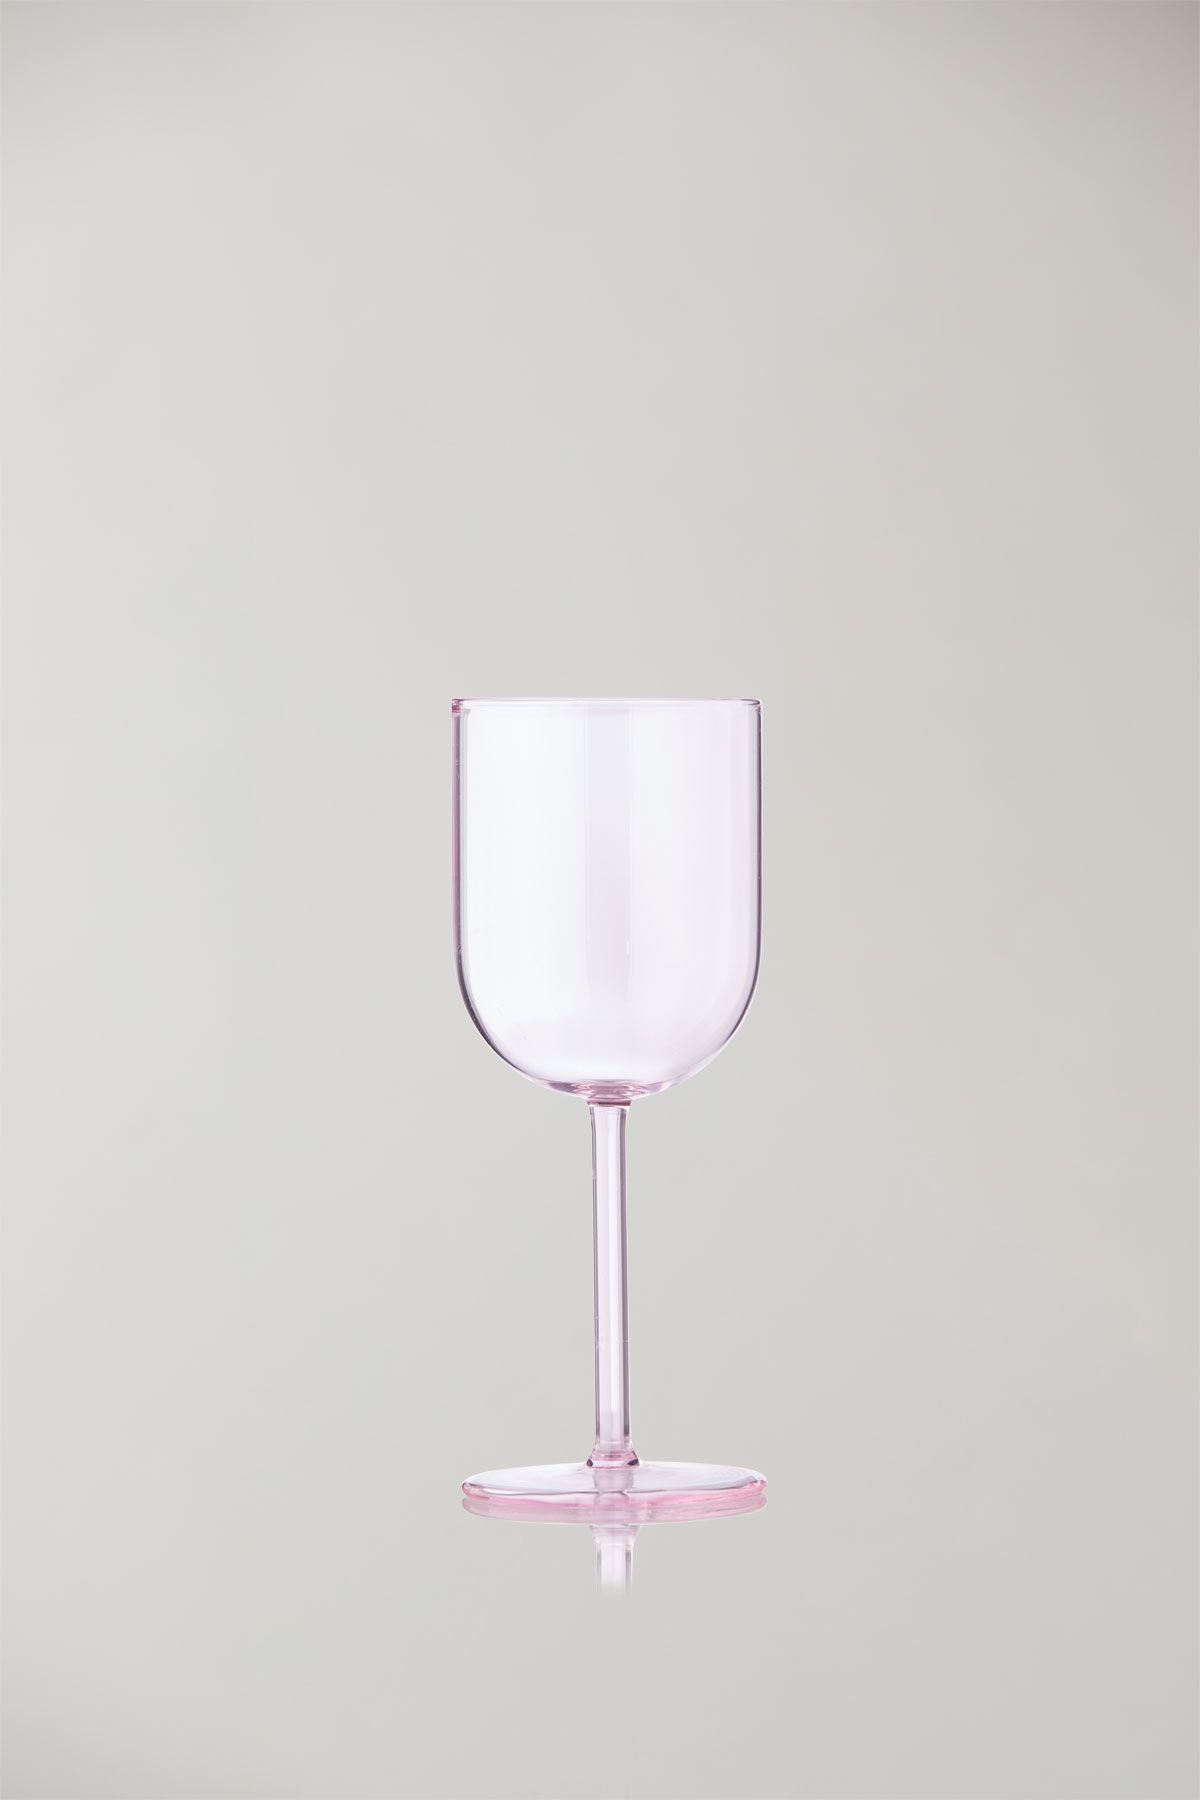 Studio sur l'ensemble de la verrerie de 2 verres à vin, rose